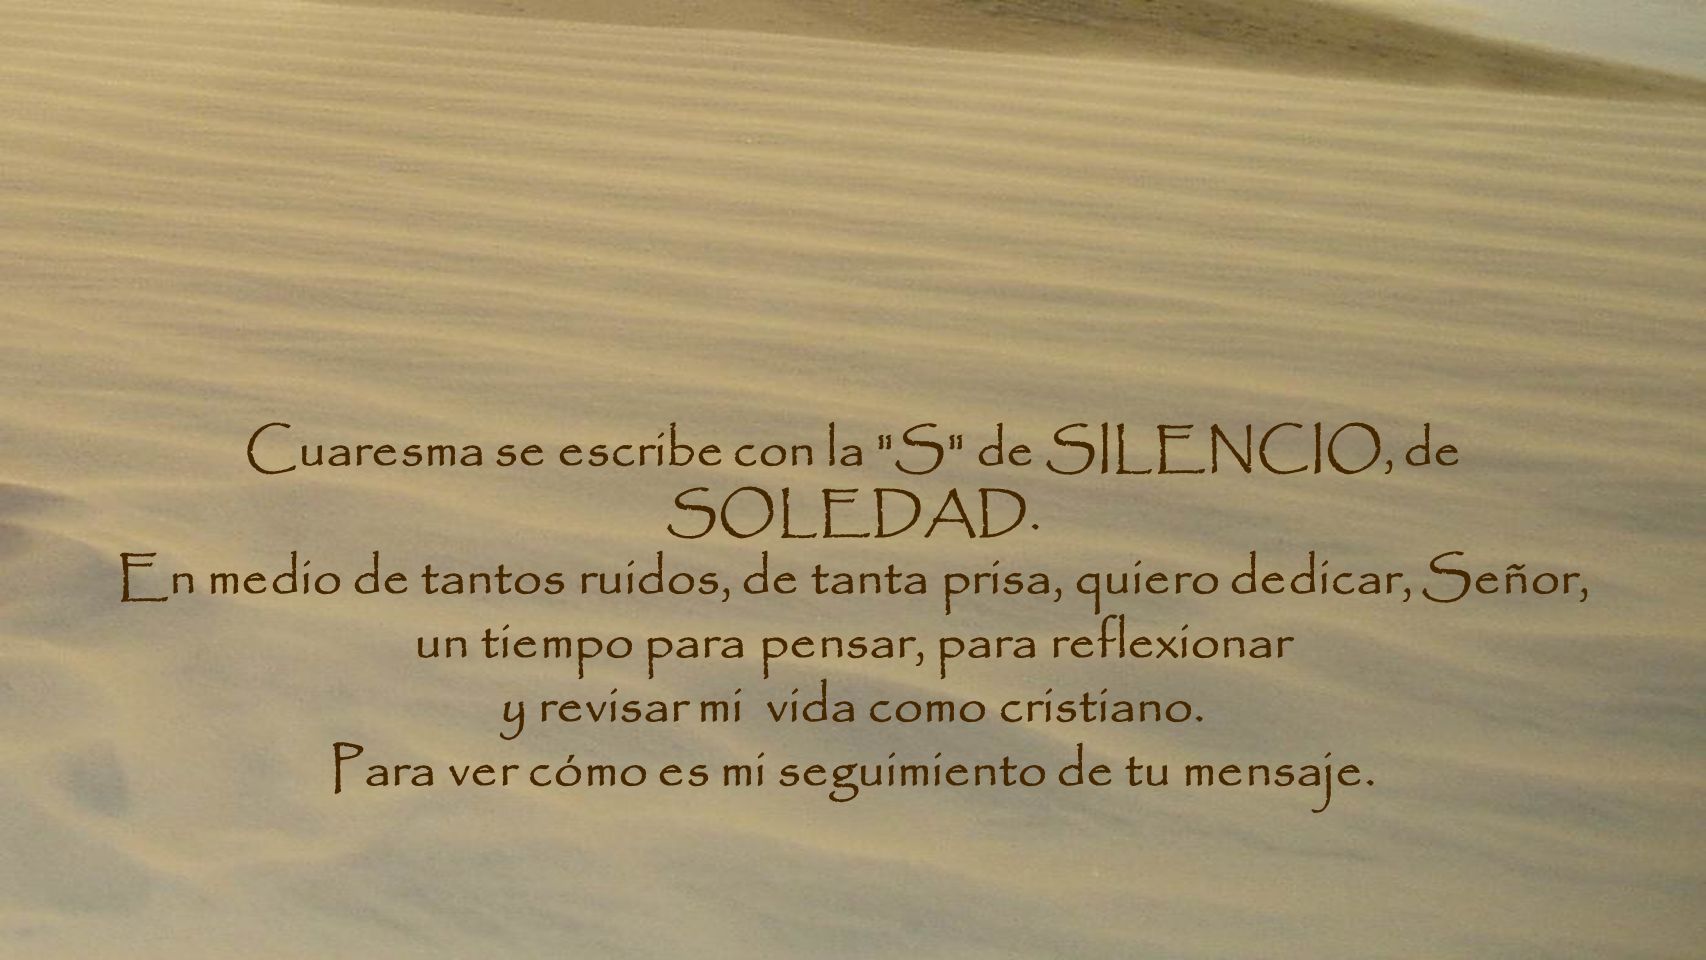 Cuaresma se escribe con la S de SILENCIO, de SOLEDAD.